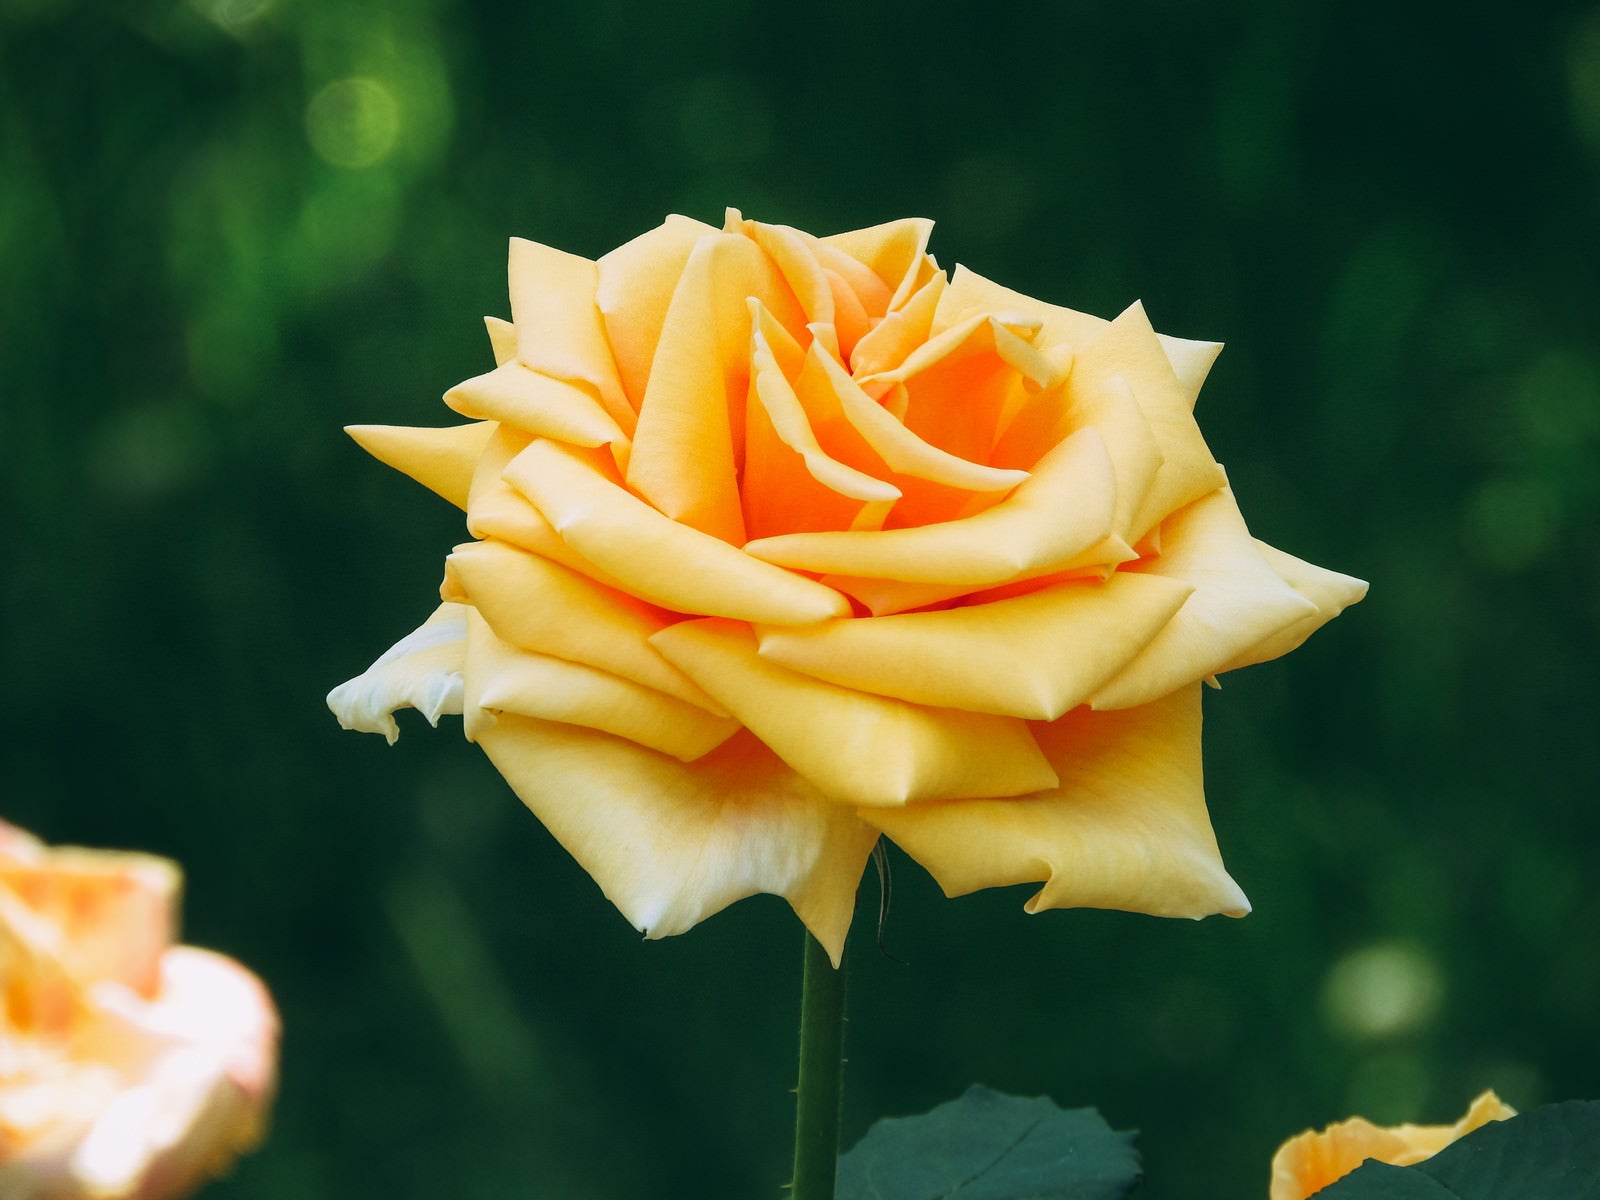 「形の良い黄色い薔薇の花」の写真